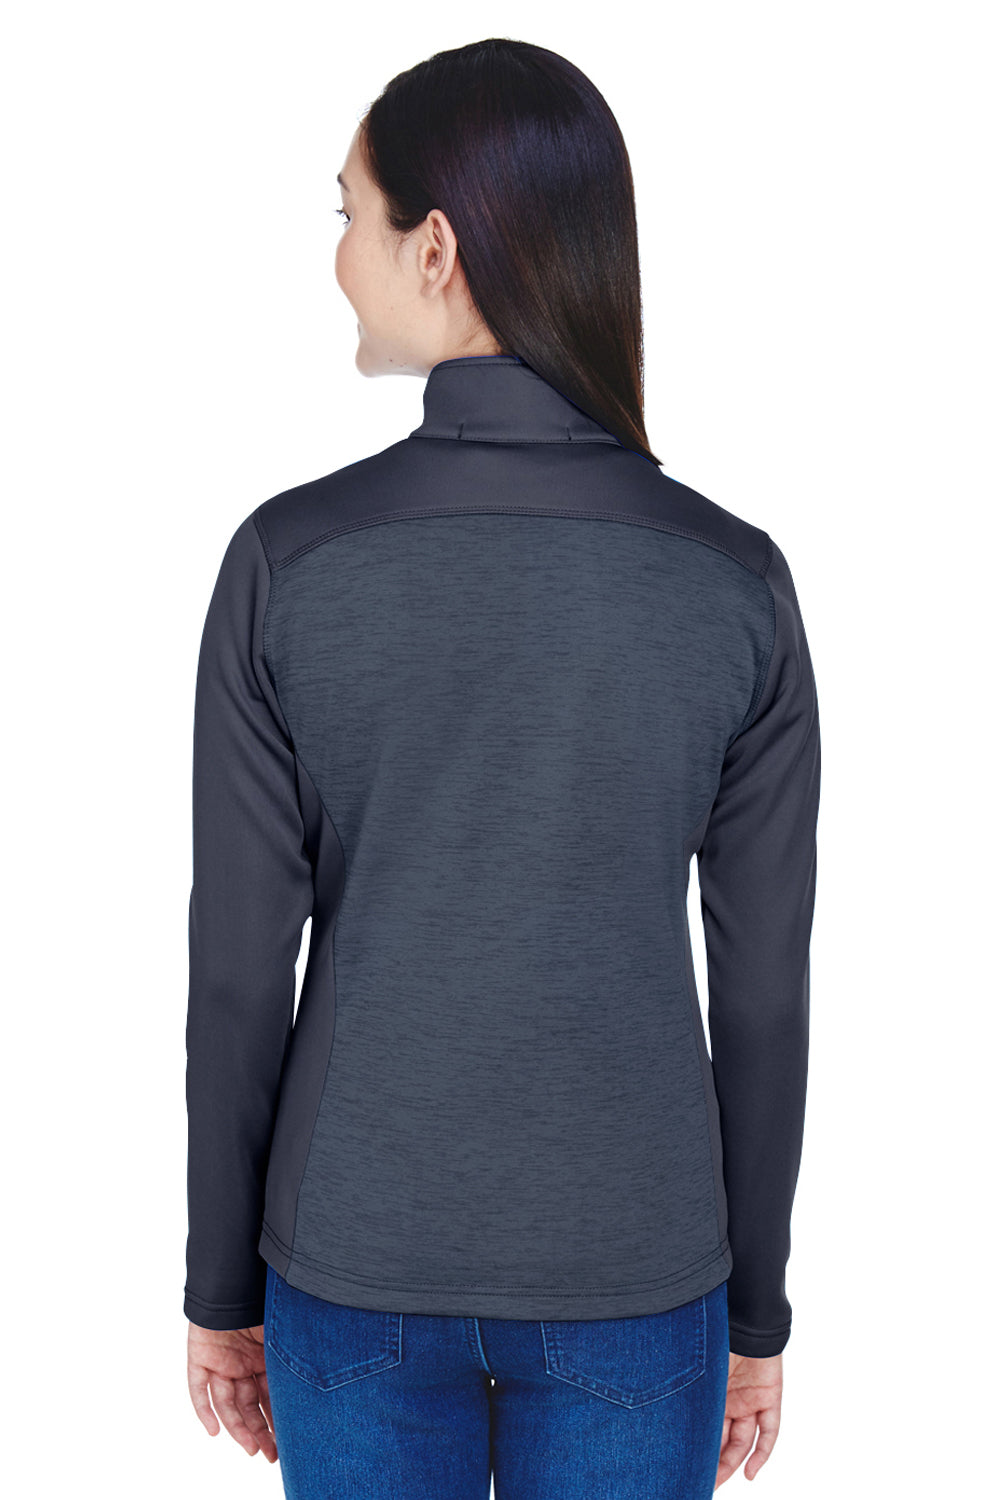 Devon & Jones DG796W Womens Newbury Fleece Full Zip Sweatshirt Navy Blue Back